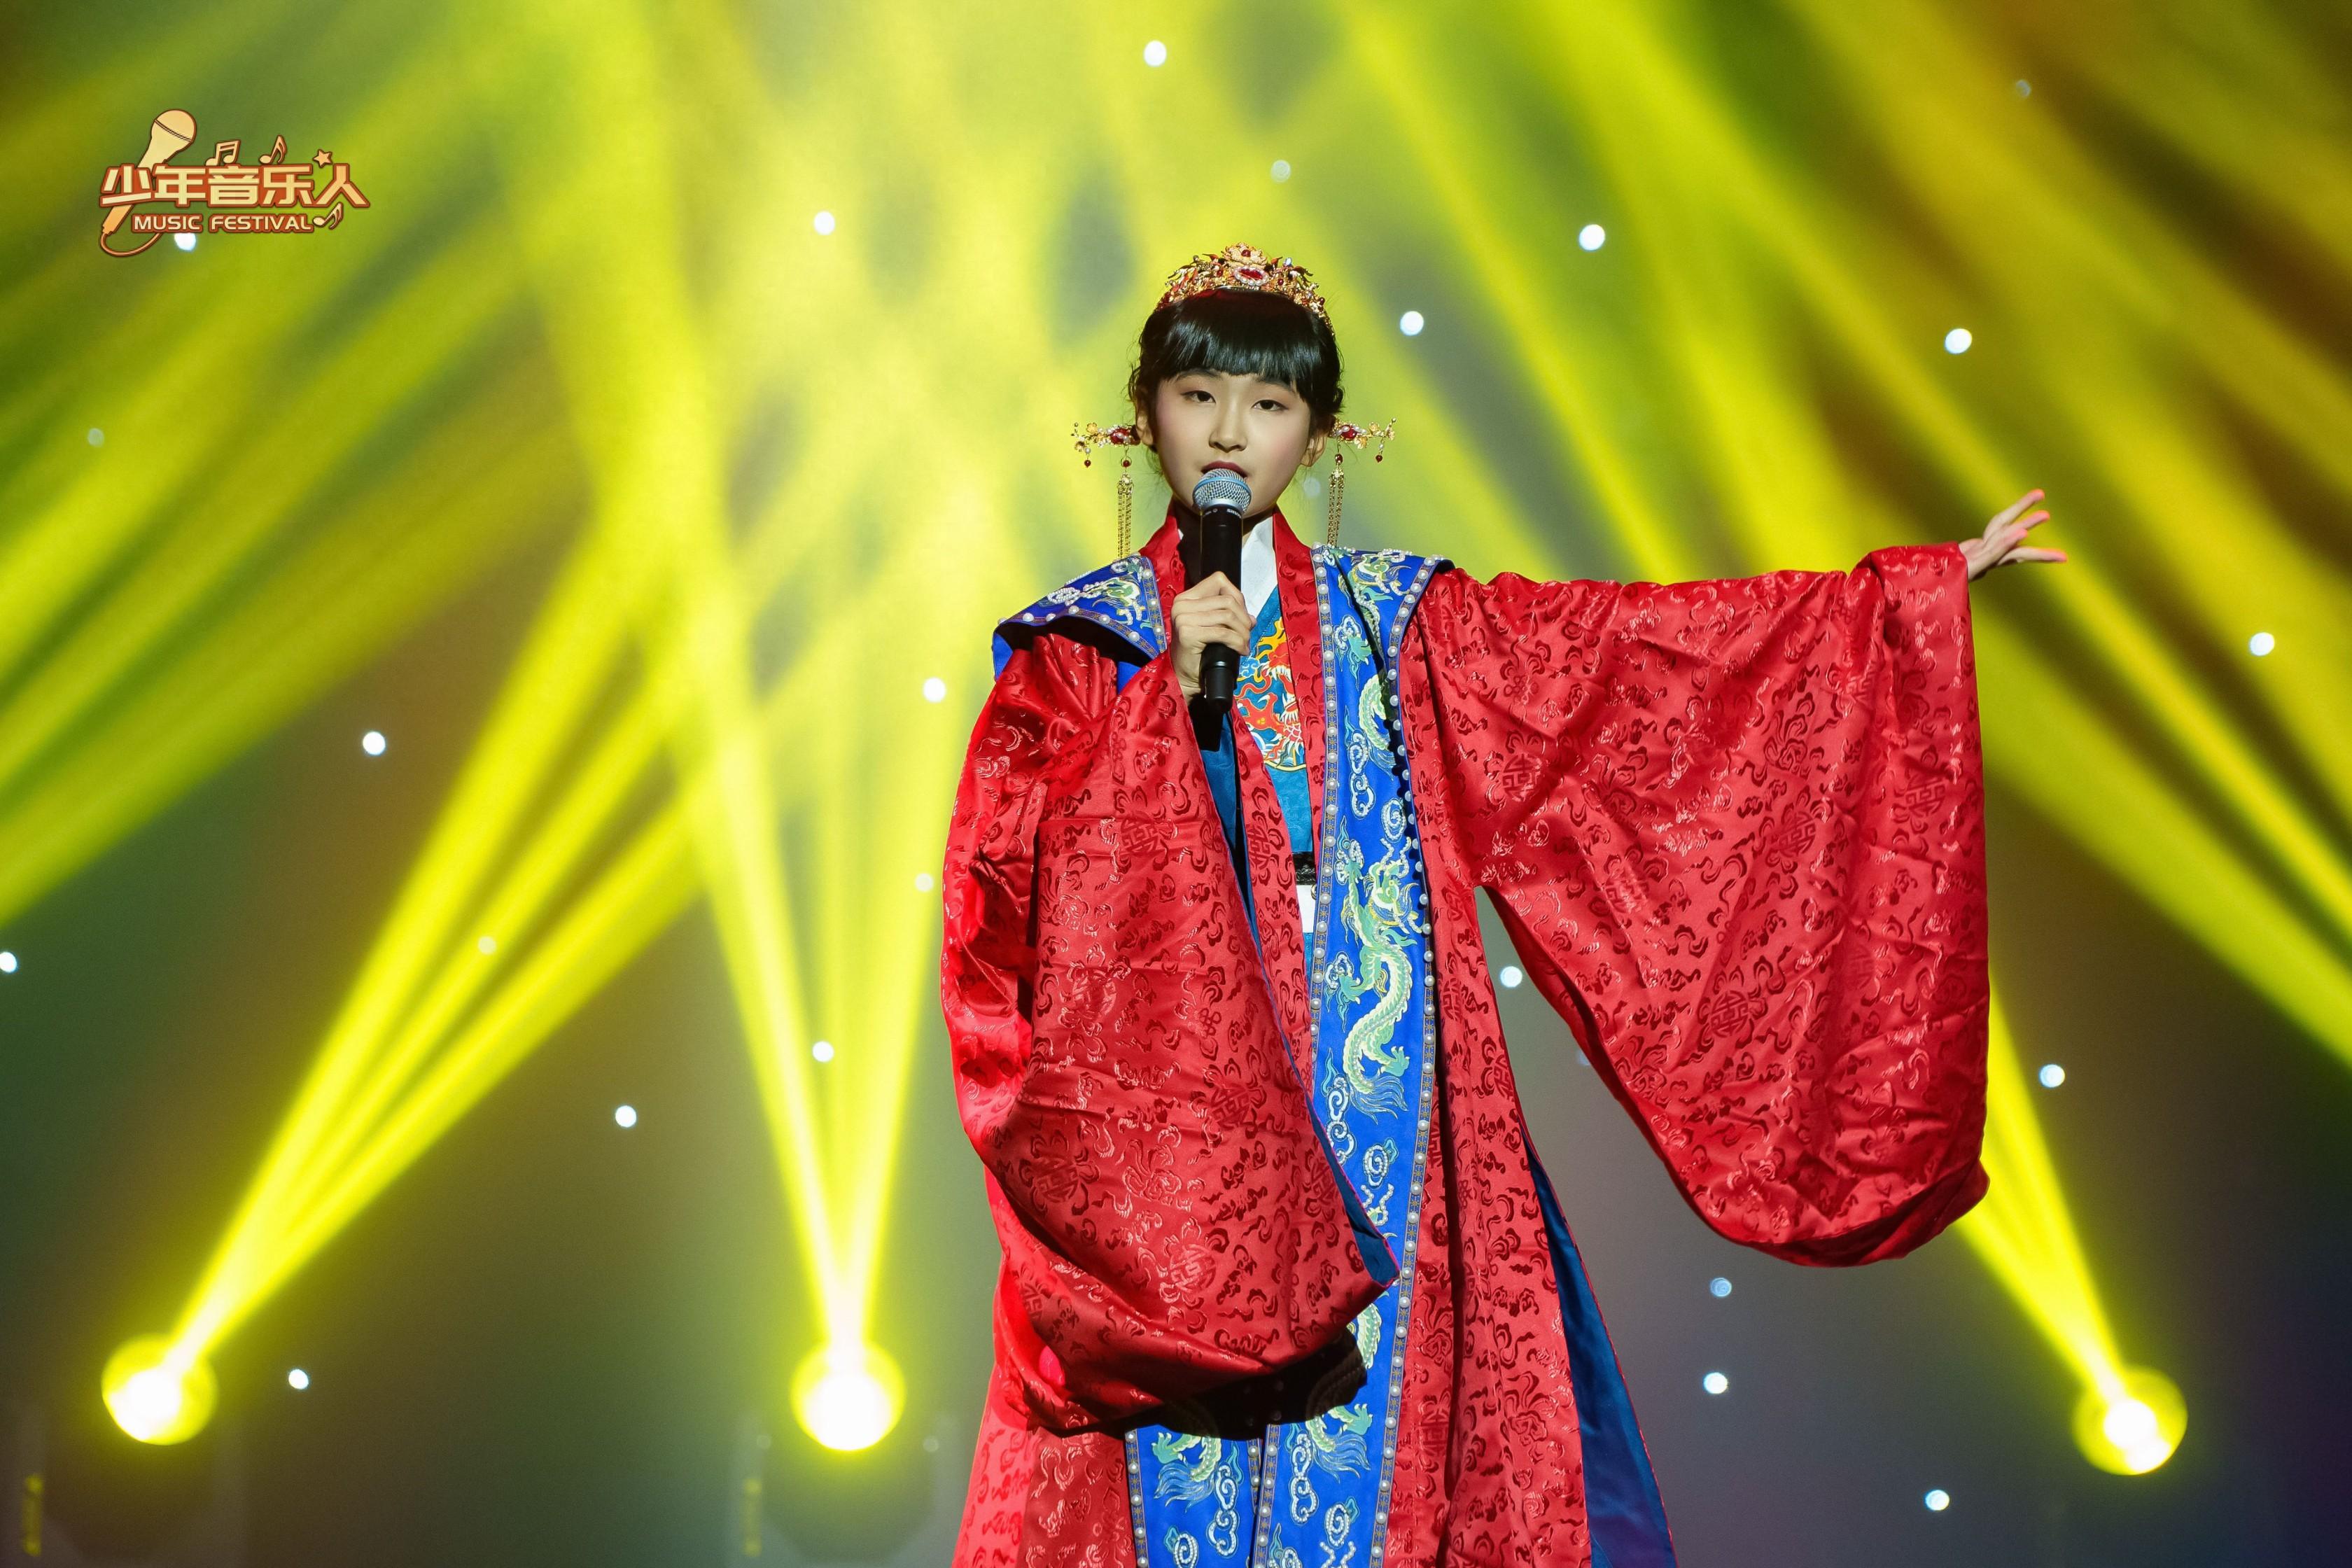 黄姚婉尔获少年音乐人第二届原创音乐盛典最受欢迎少儿国风女歌手